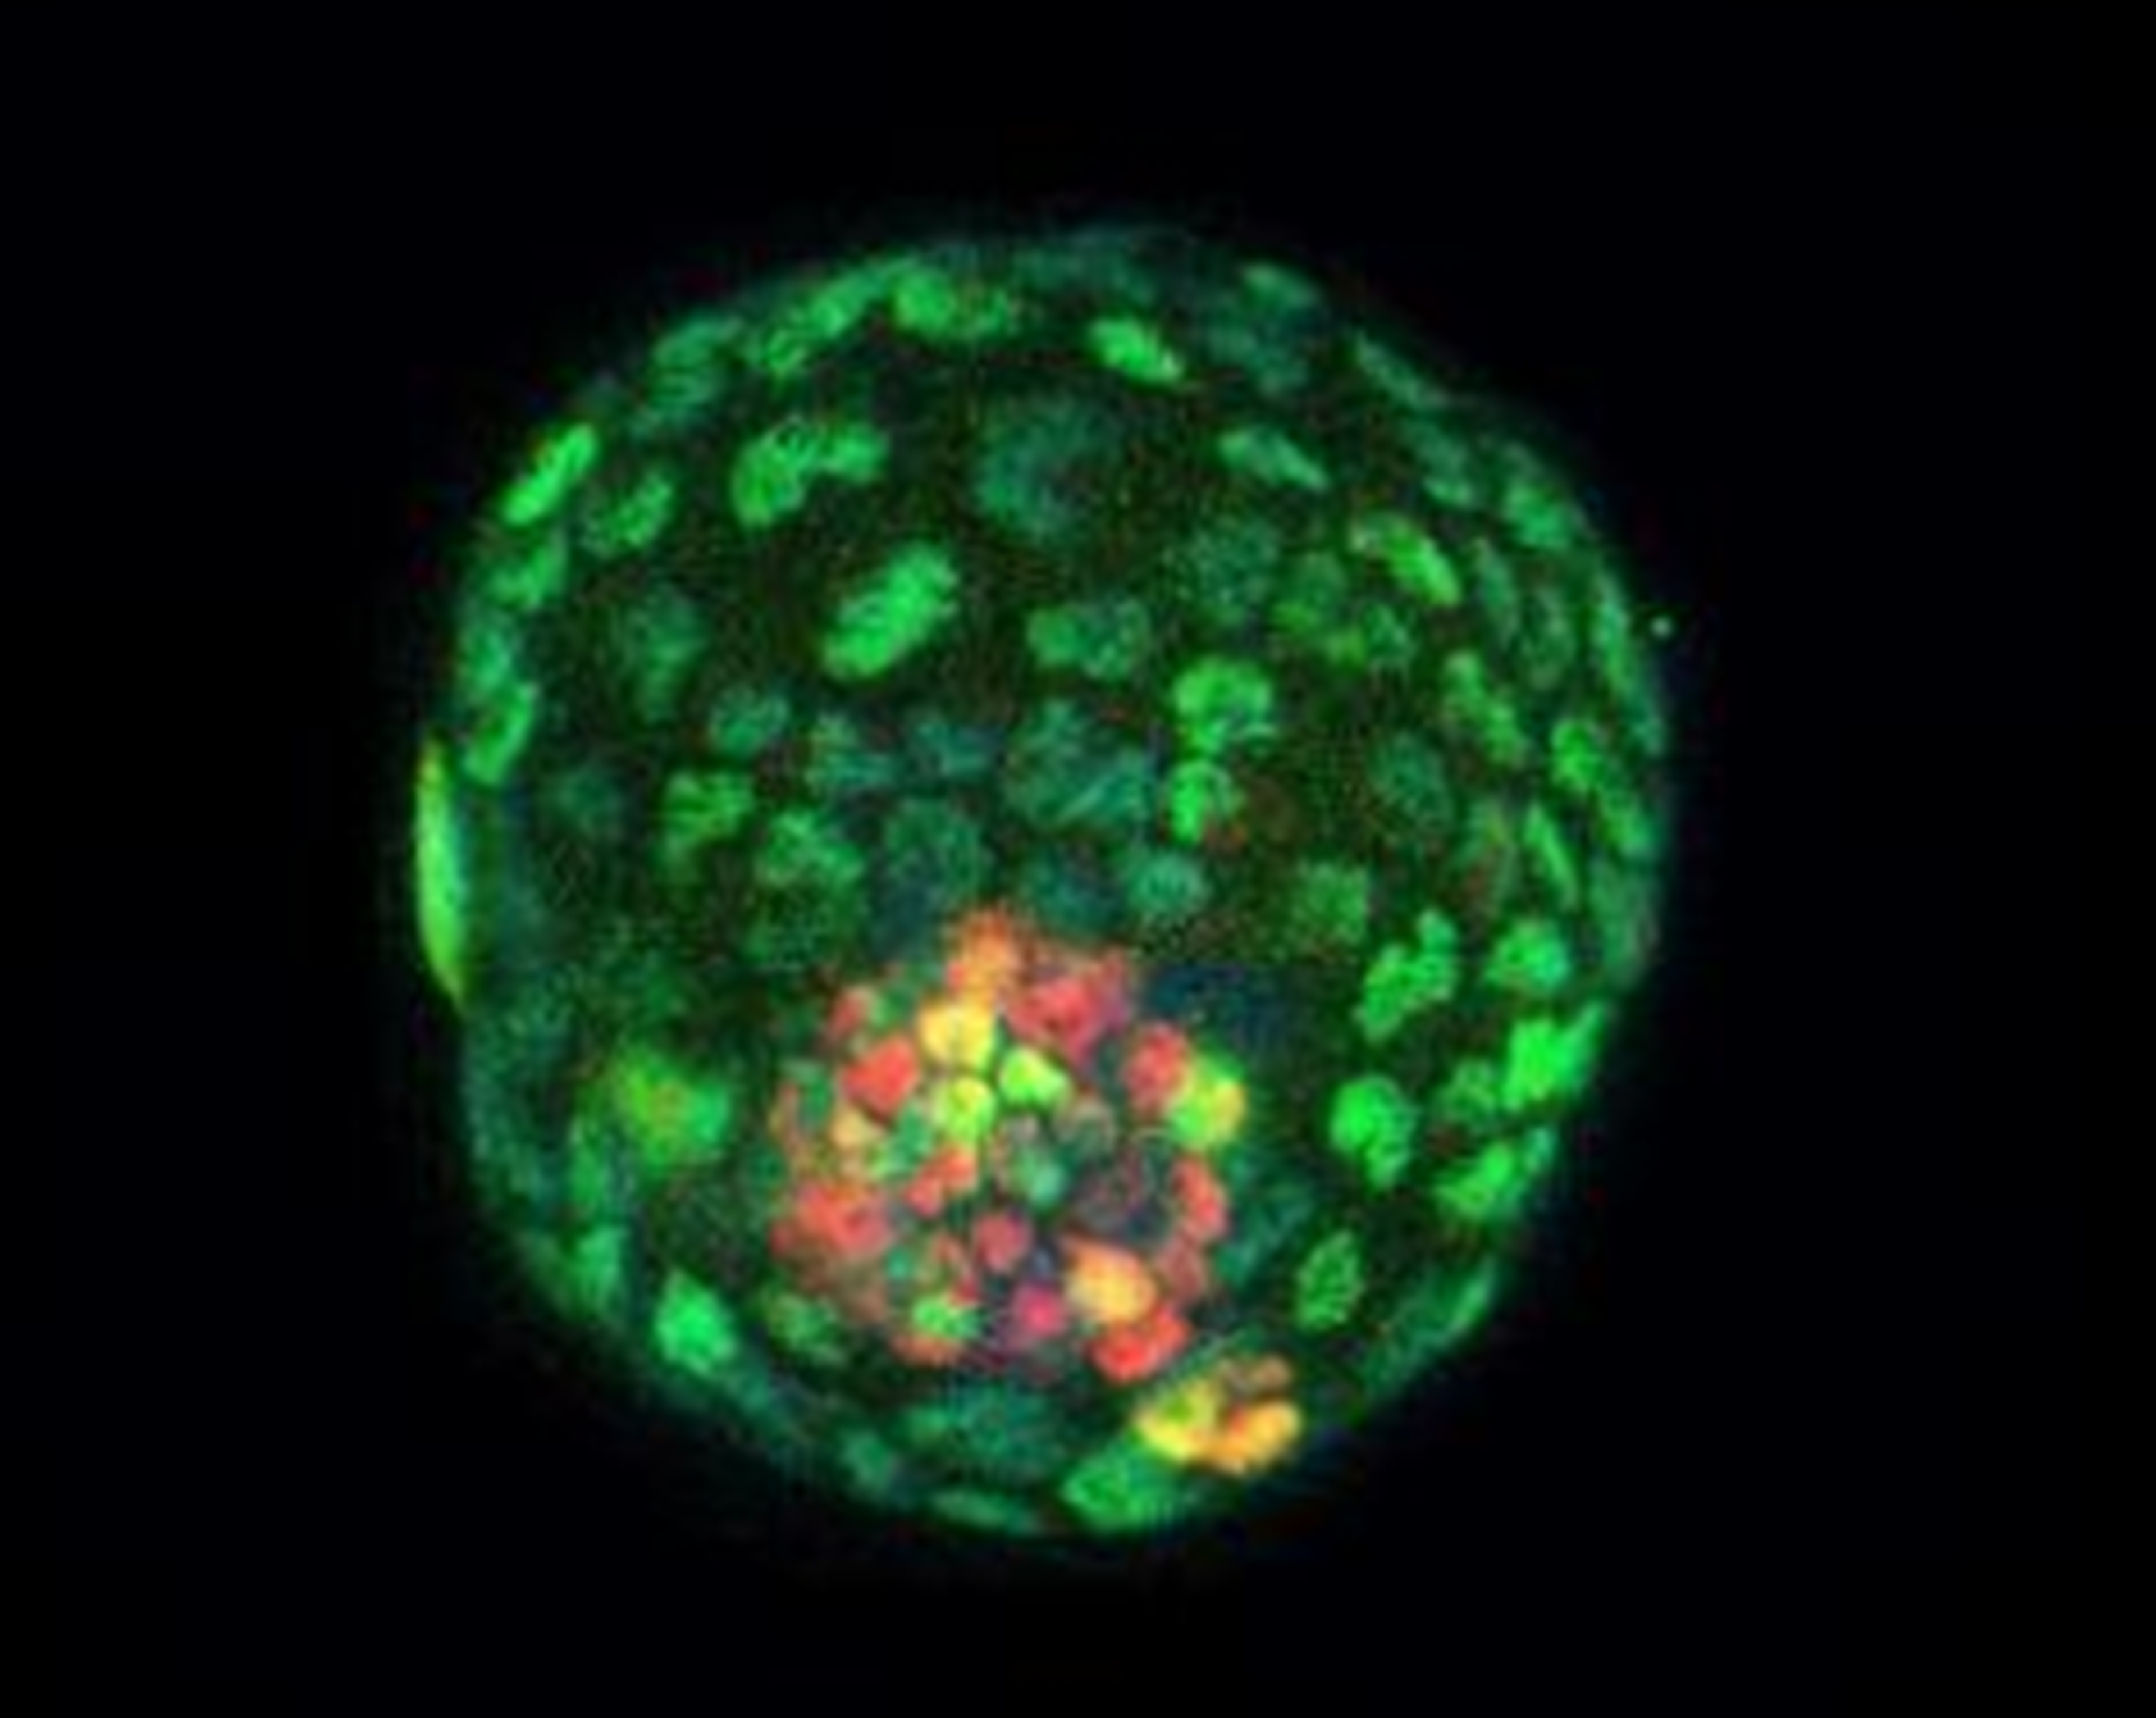 Estructuras similares a blastocitos (blastoides) de células cultivadas de ratón teñidas con inmunofluorescencia.